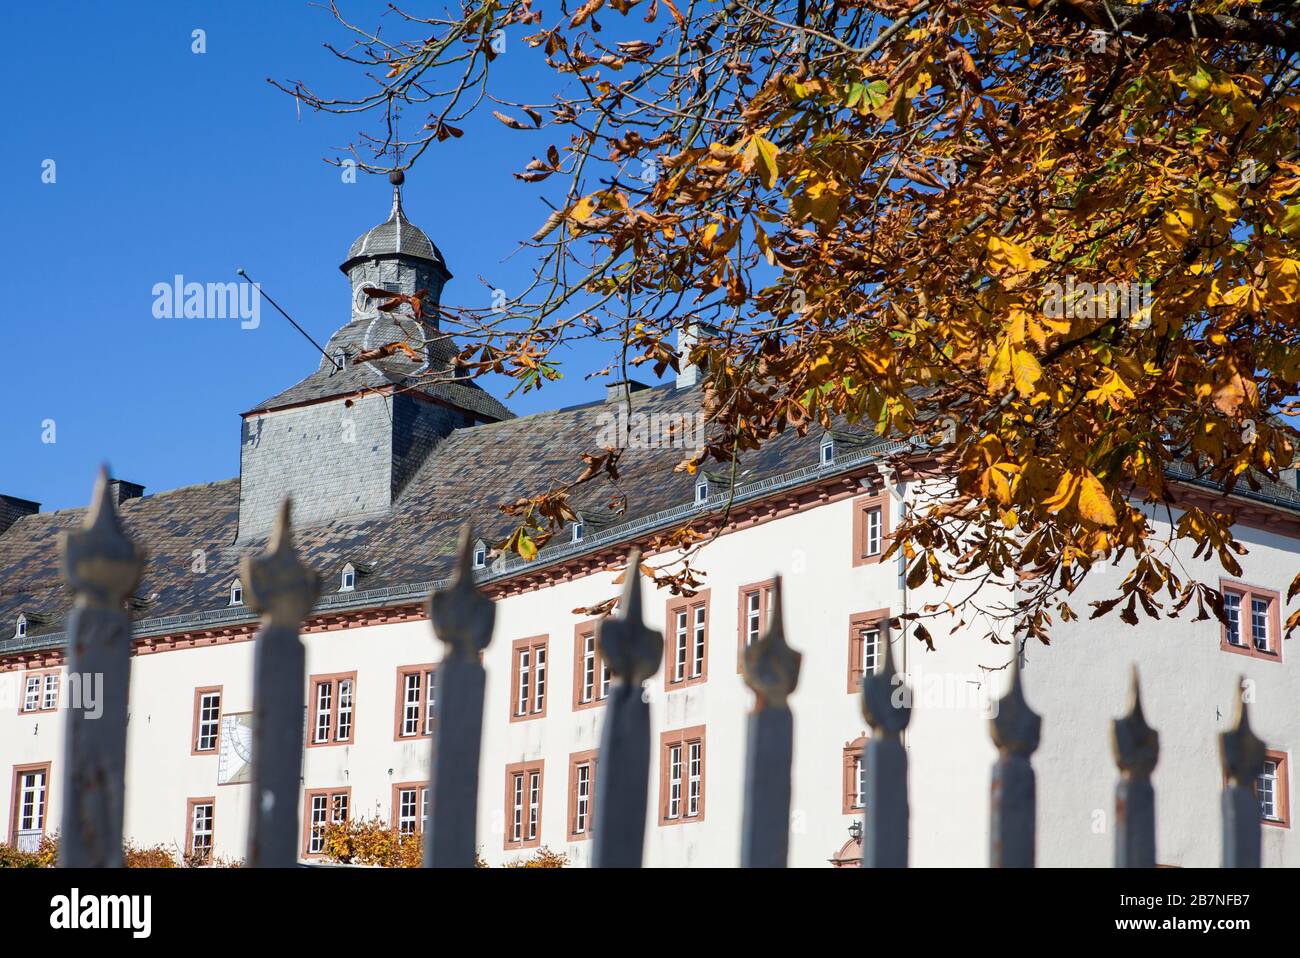 Schloss Berleburg Castle, Bad Berleburg, Wittgensteiner Land district, North Rhine-Westphalia, Germany, Europe Stock Photo